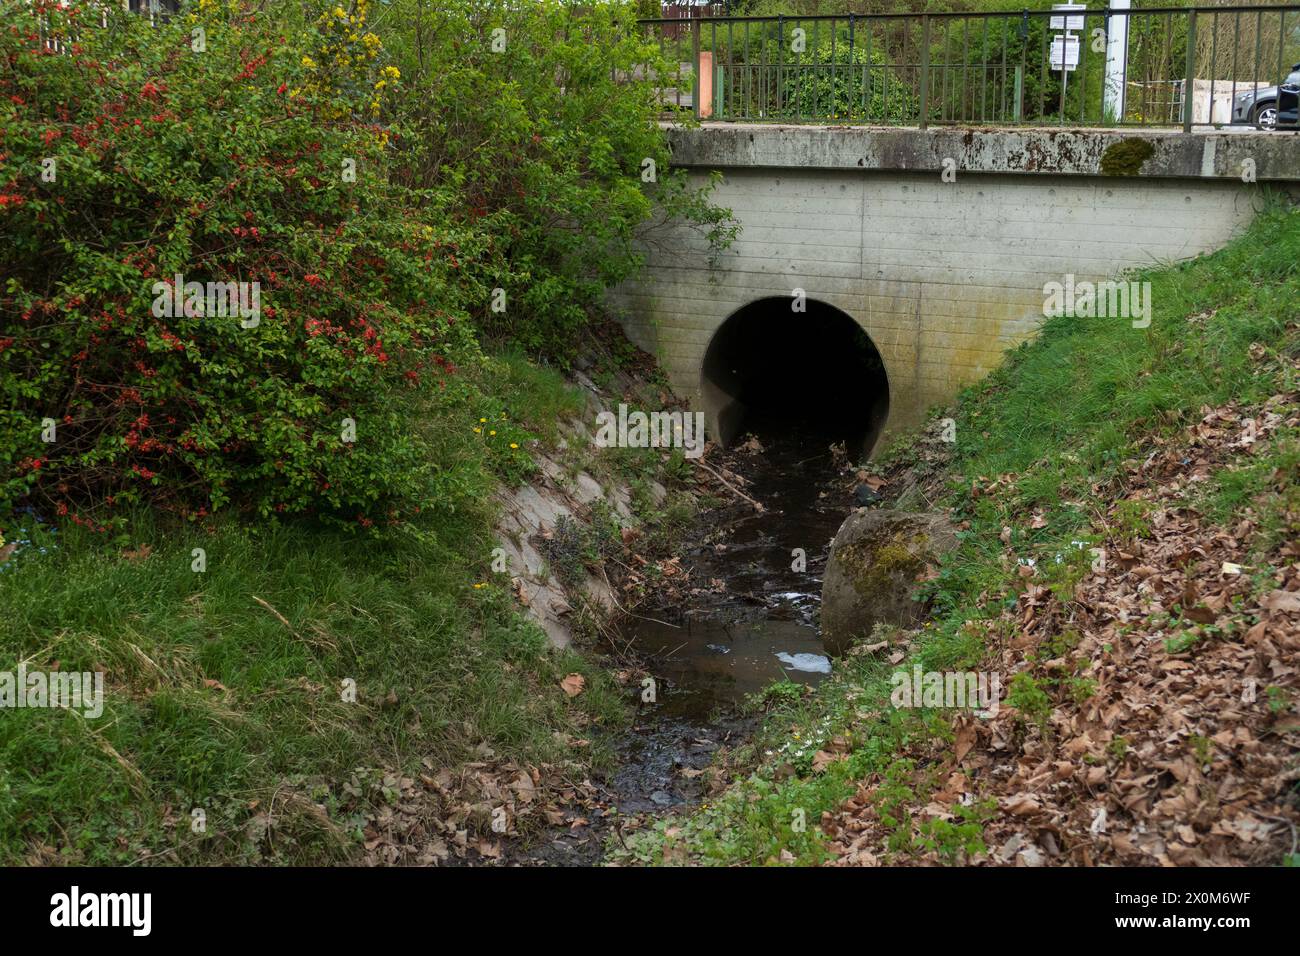 Abwasserkanal aus Beton führt Wasser in einen kleine Bach Stock Photo